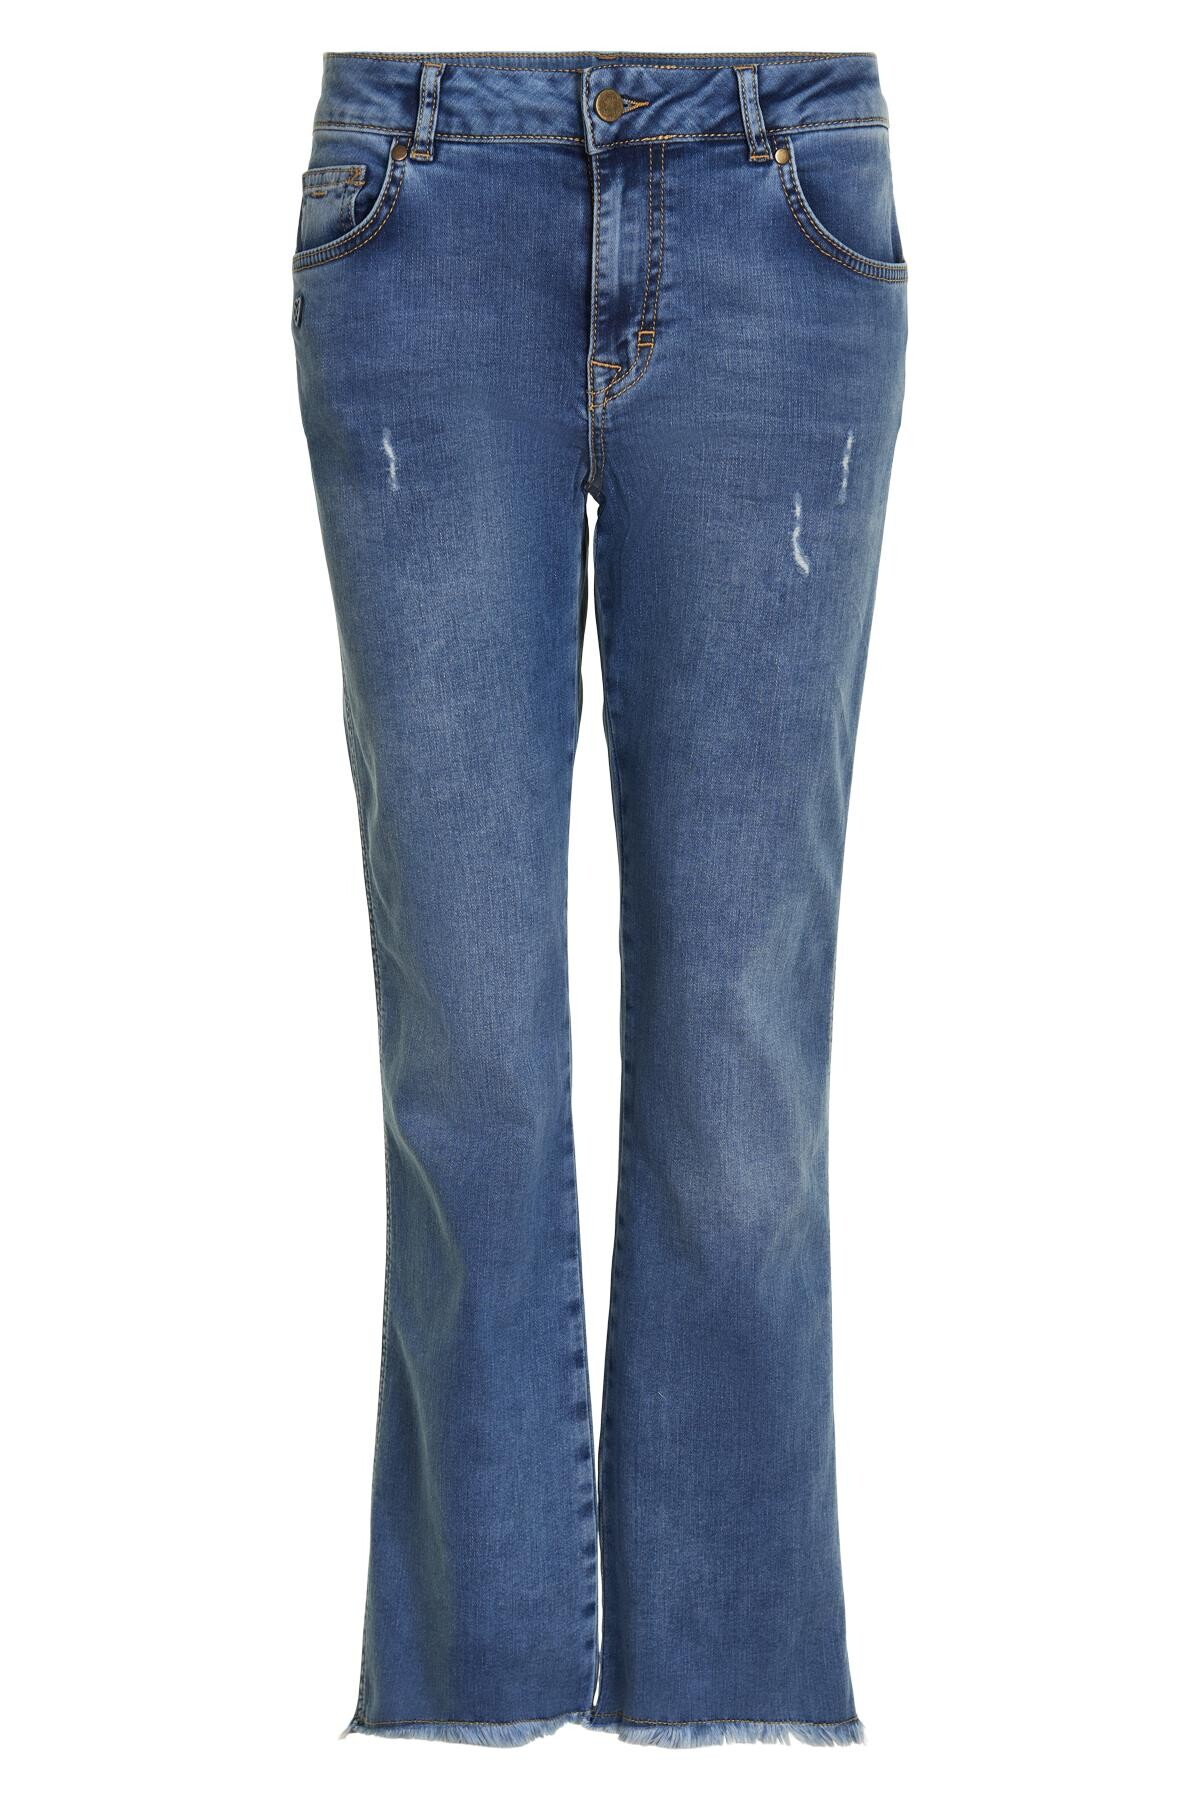 In Front Stella Jeans, Farve: Blå, Størrelse: 40, Dame